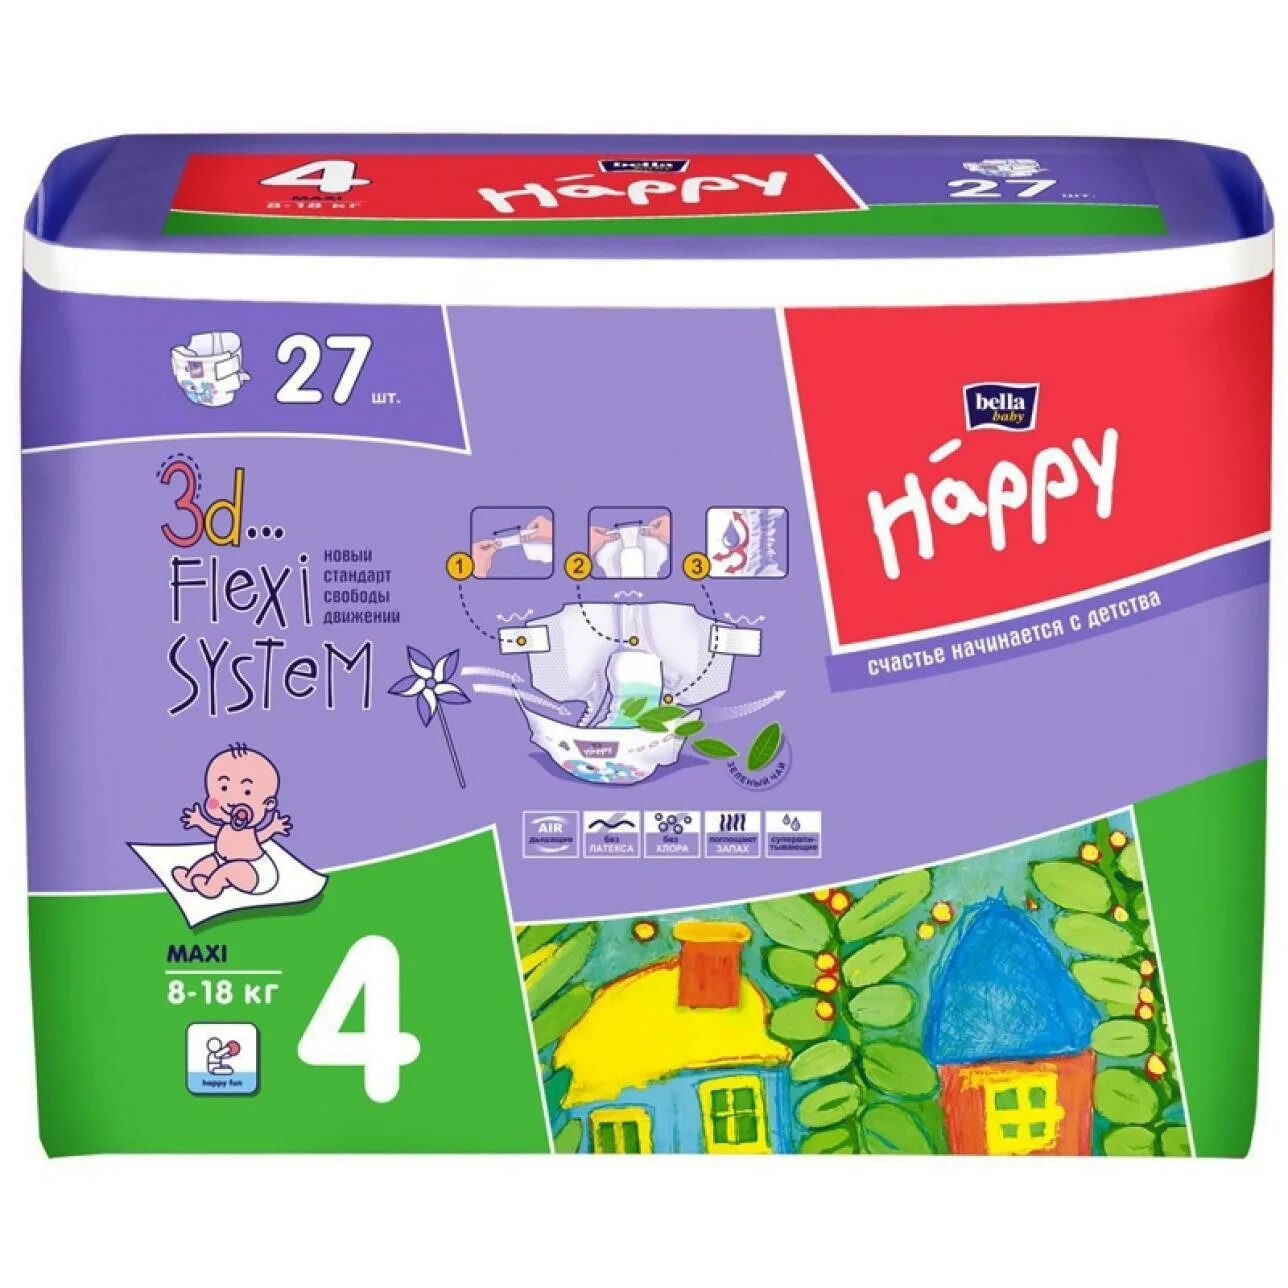 Подгузники maxi. Подгузники Happy Bella 4. Подгузники для детей Happy Maxi 4.